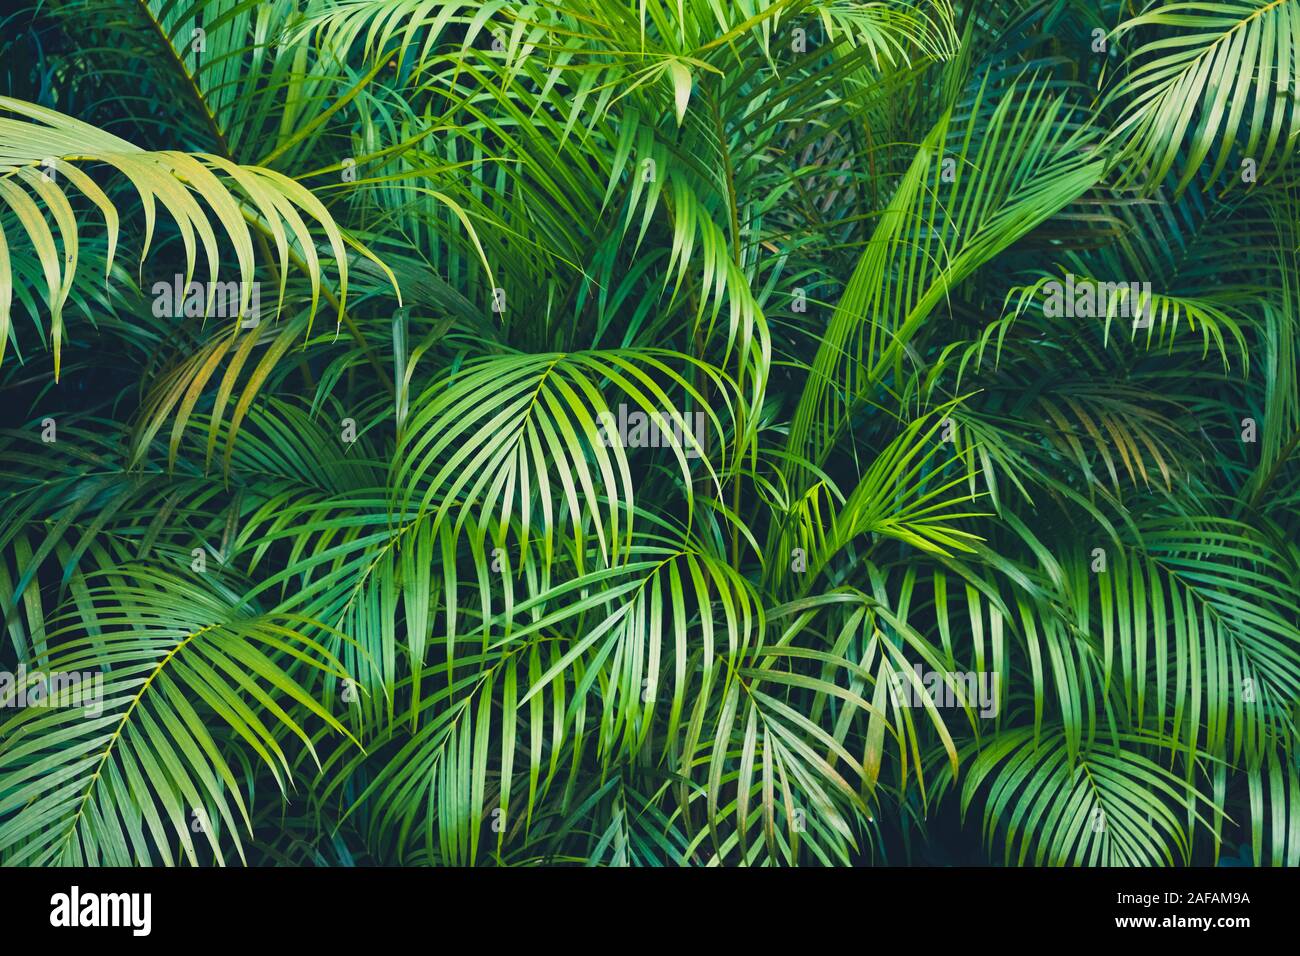 Tropische pflanze Hintergrund - palmenblättern - Stockfoto